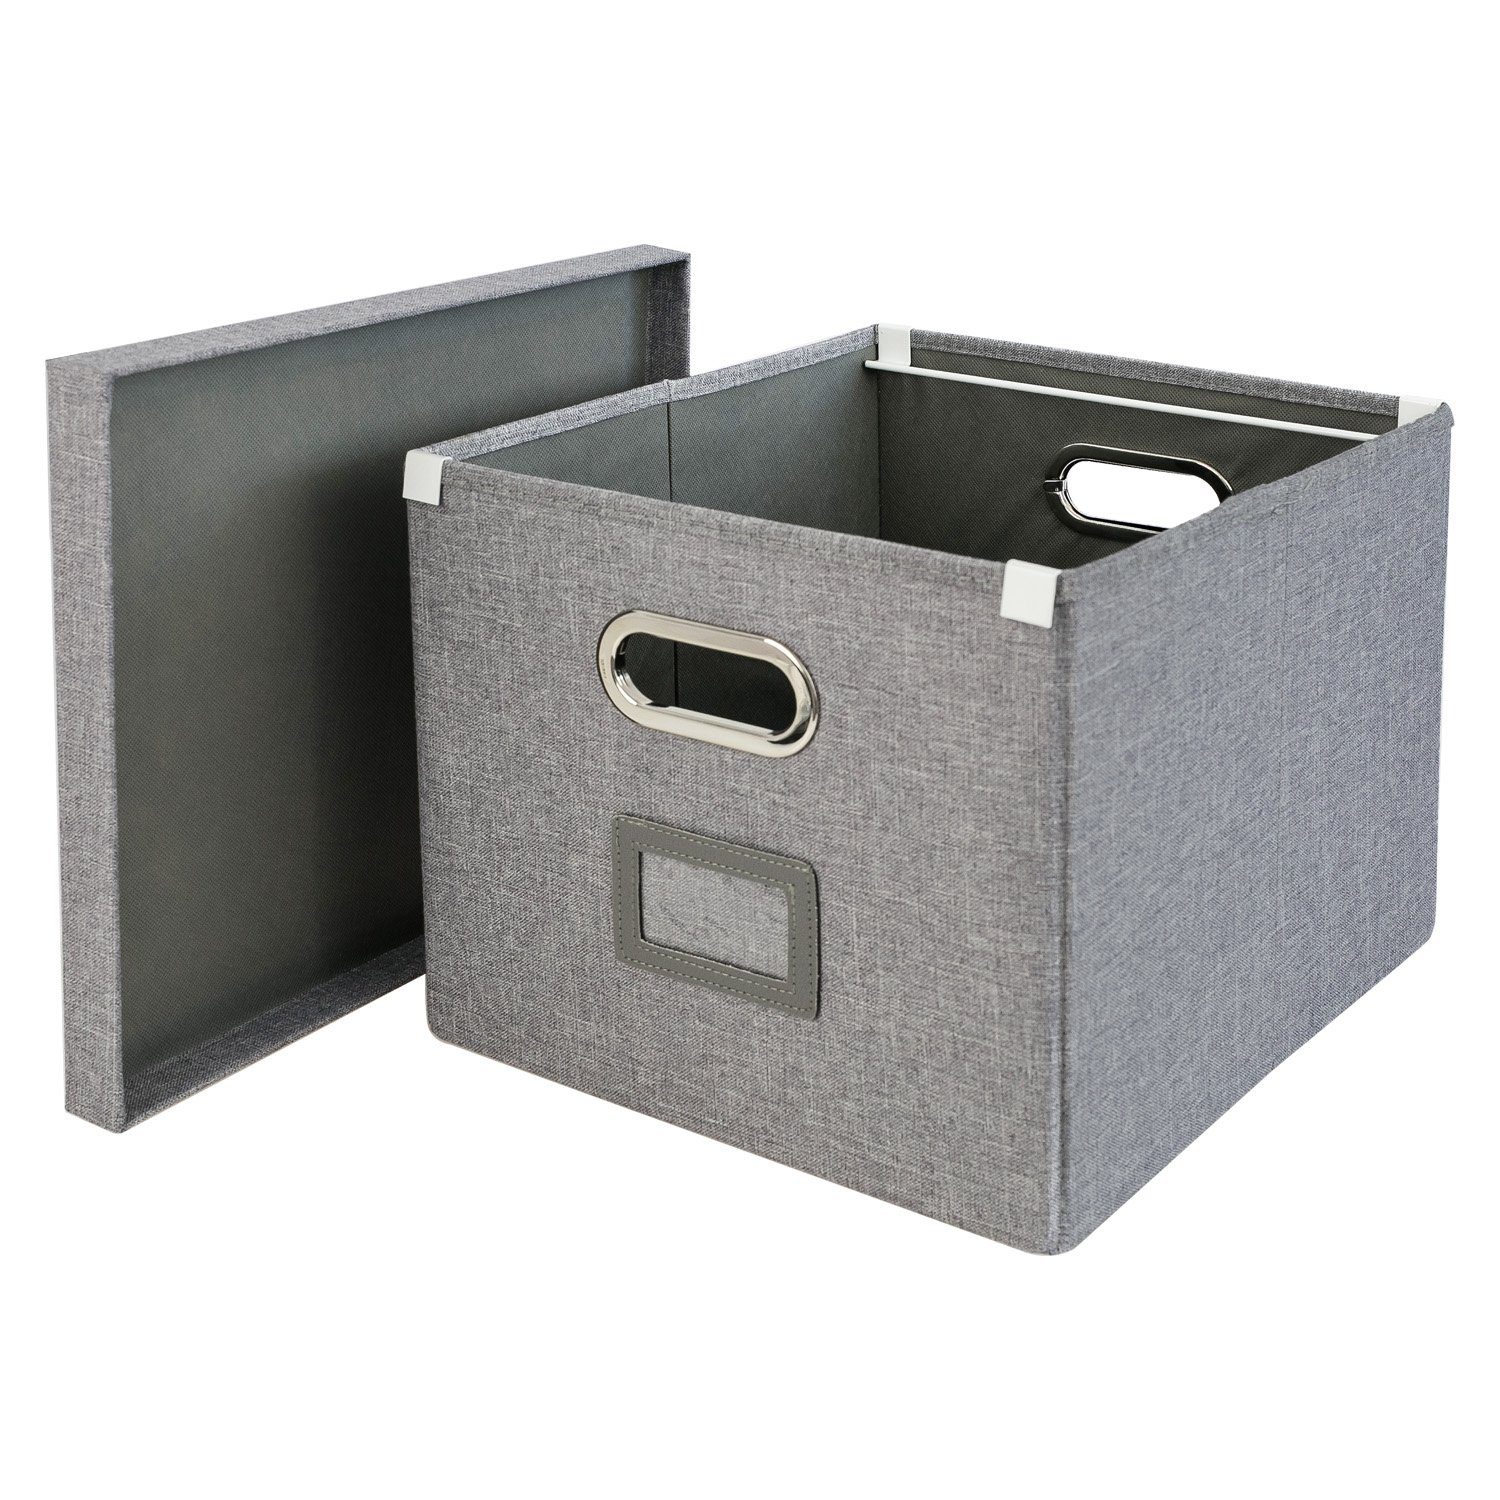 HMF Allzweckkorb dekorative Aufbewahrungsbox, praktischer Dekokorb für  Kallax Regal, 33x37,5x28 cm